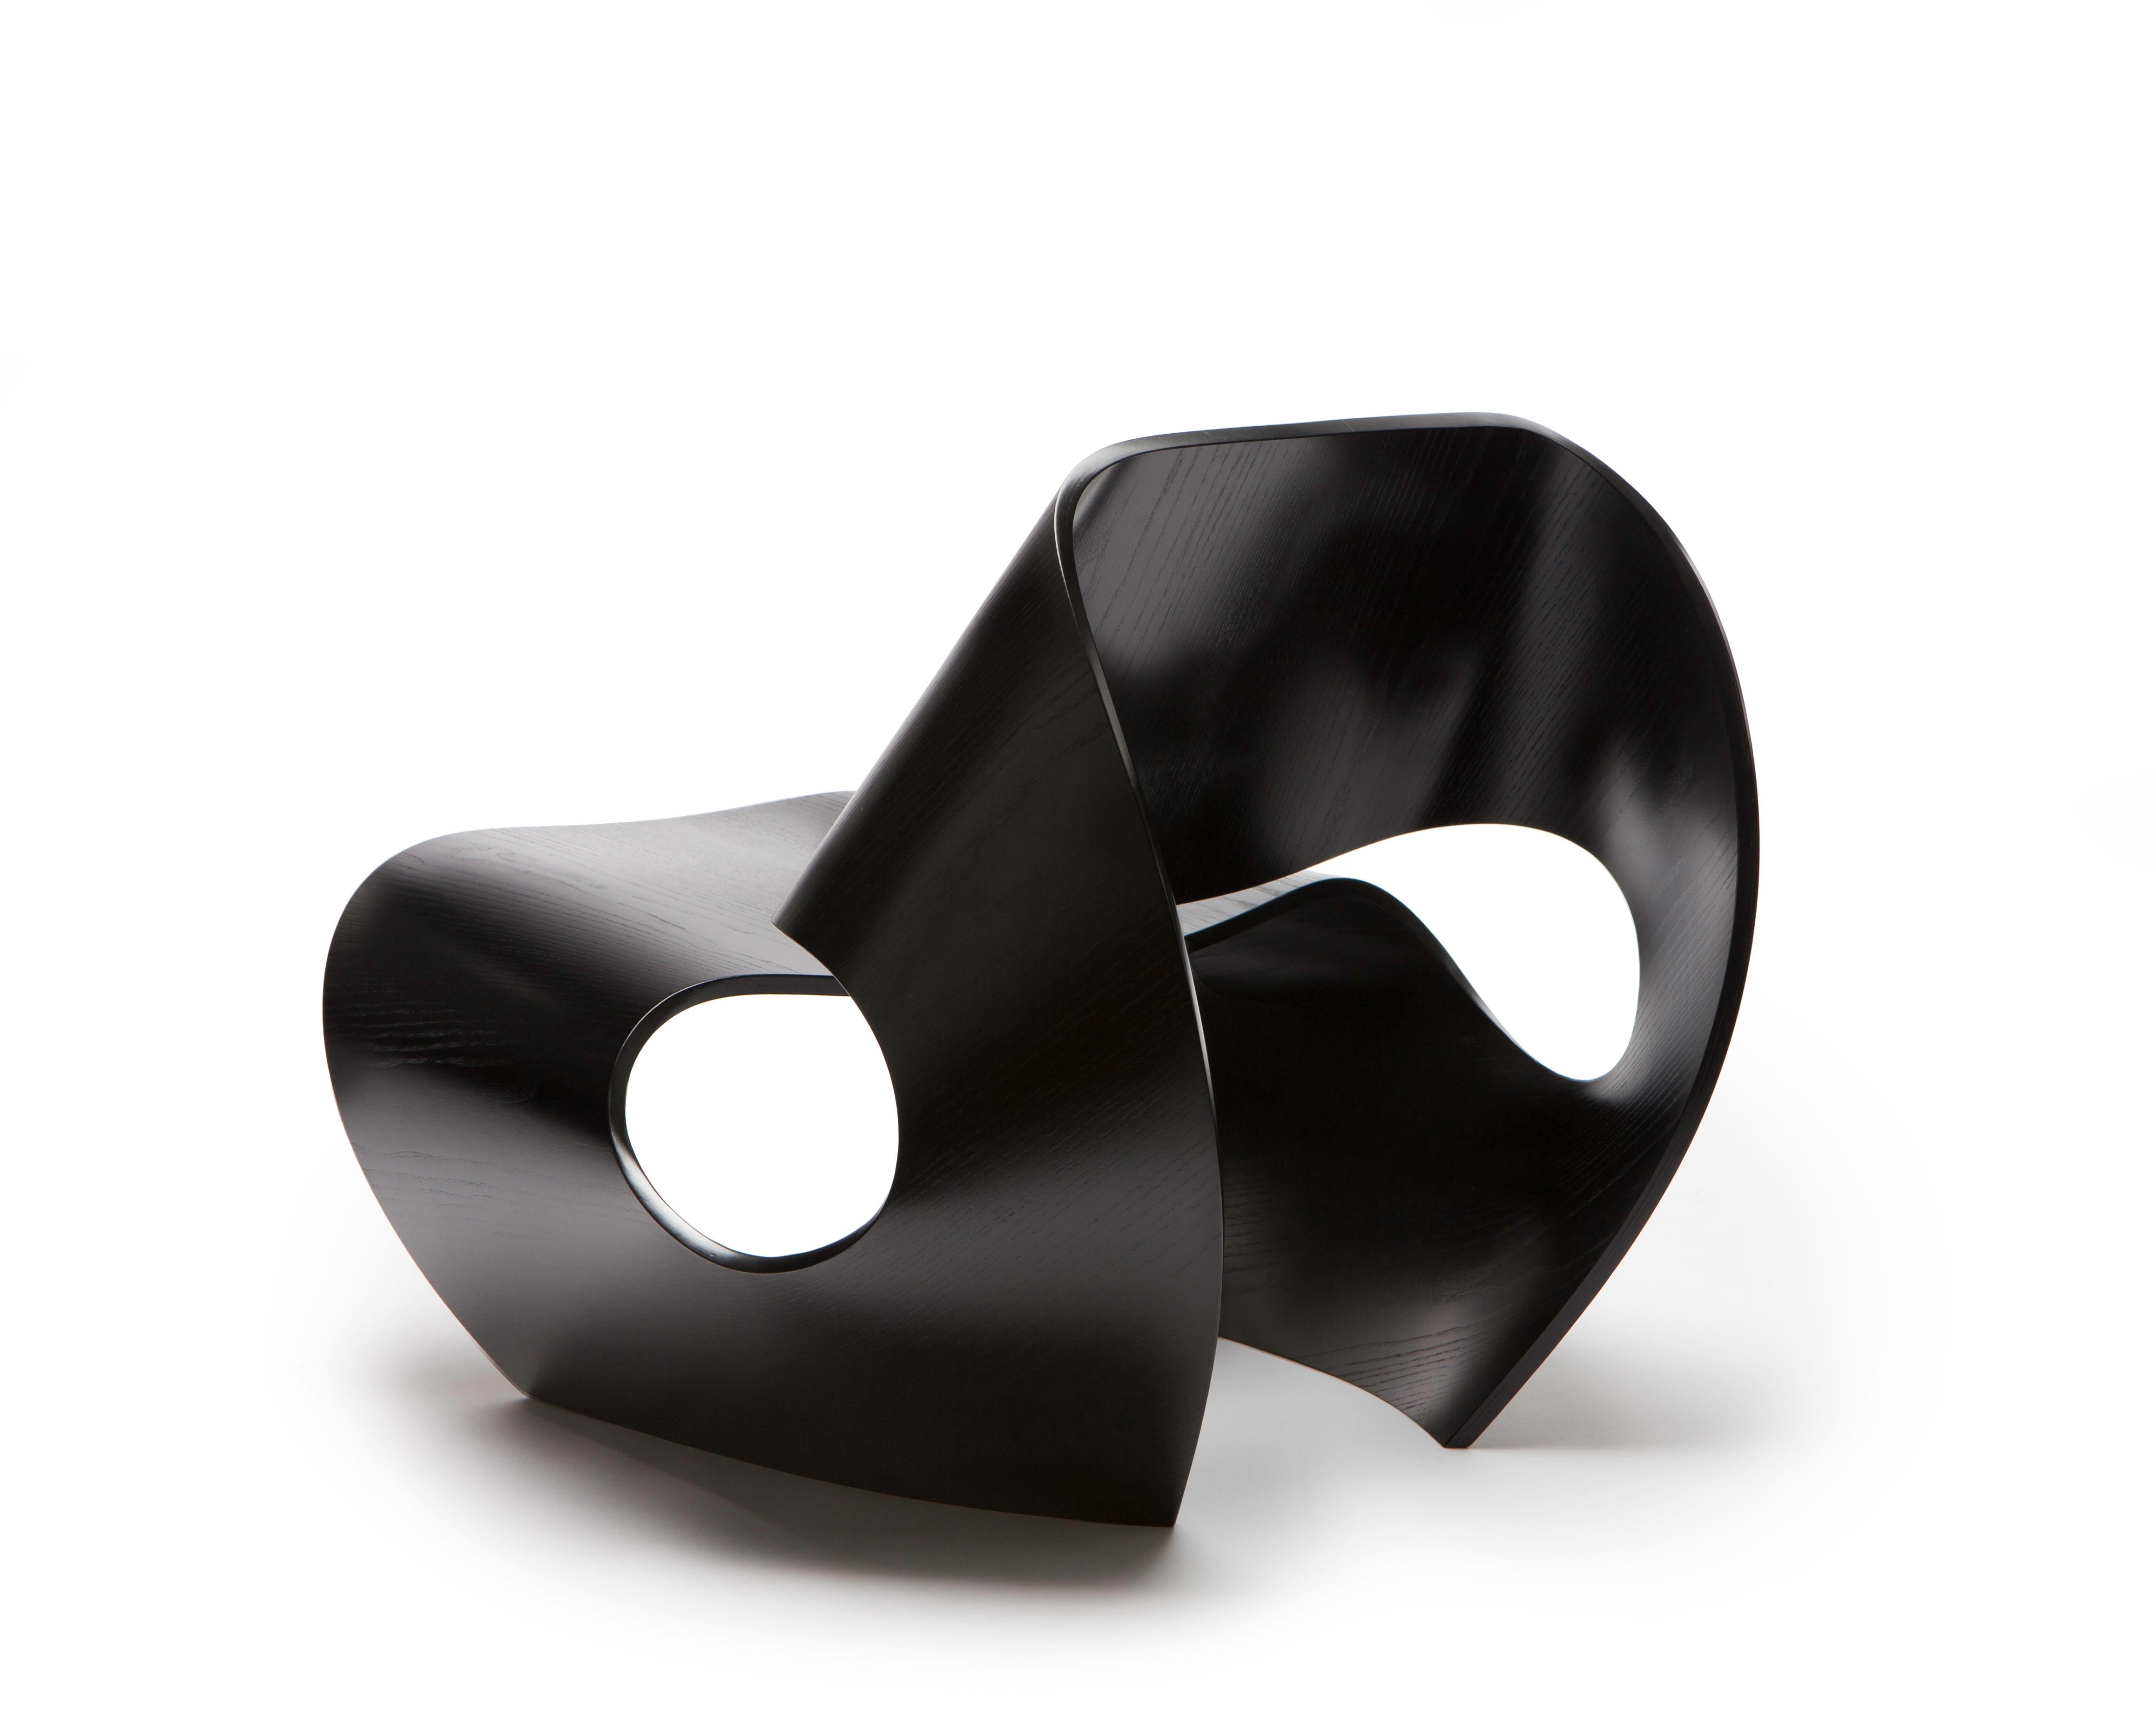 La chaise Cowrie contemporaine est une chaise facile solide comme le roc, inspirée par les lignes concaves des coquillages. Les formes curvilignes sont le résultat d'un processus de recherche et d'innovation approfondi qui jette un pont entre le